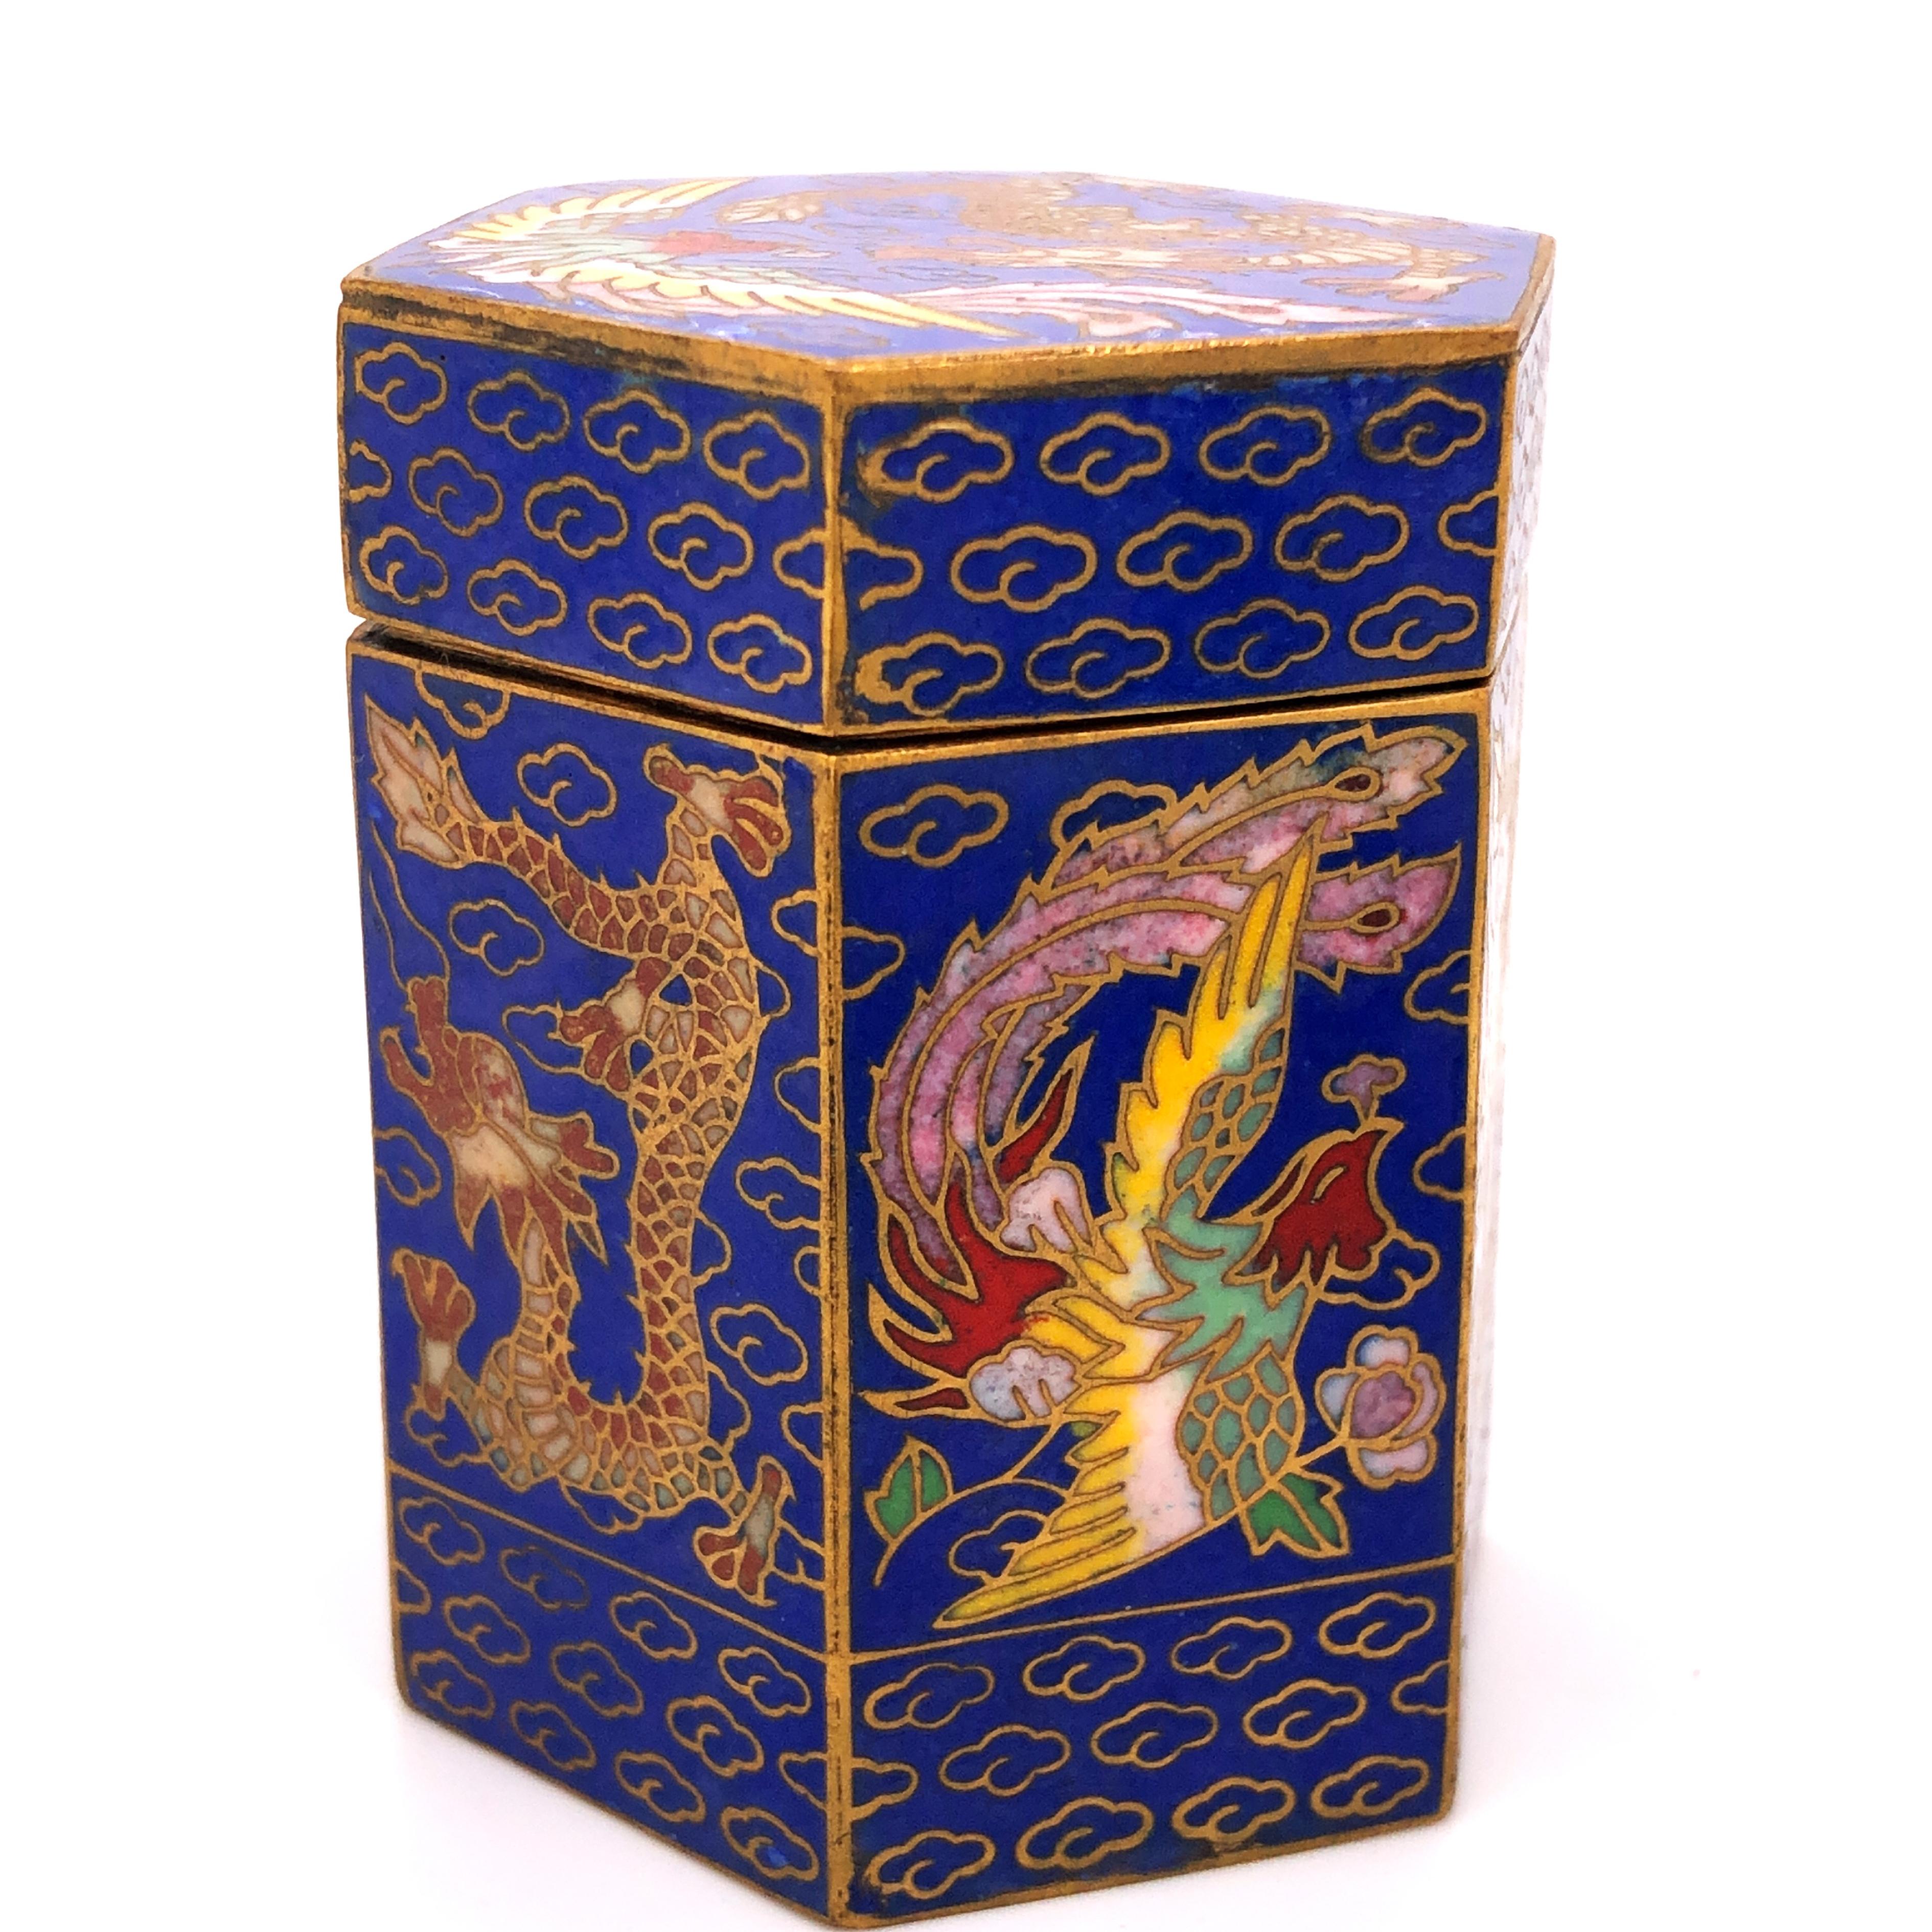 Circa 1949 Gu Yi Zhai Beijing Cloisonné Boxes Collection For Sale 2